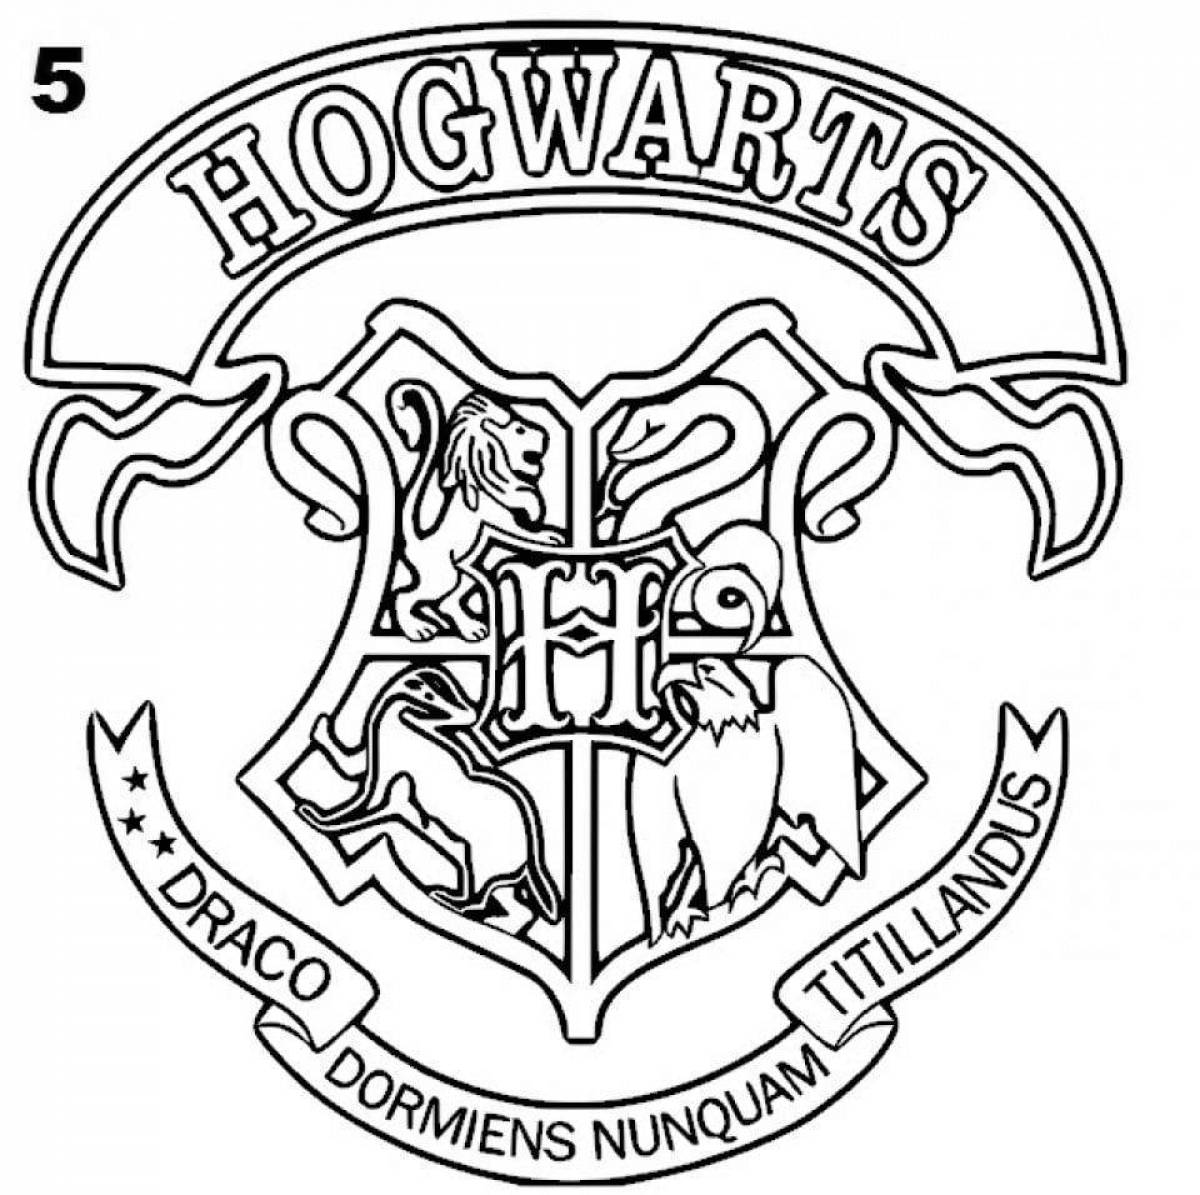 Joyful hogwarts coloring page